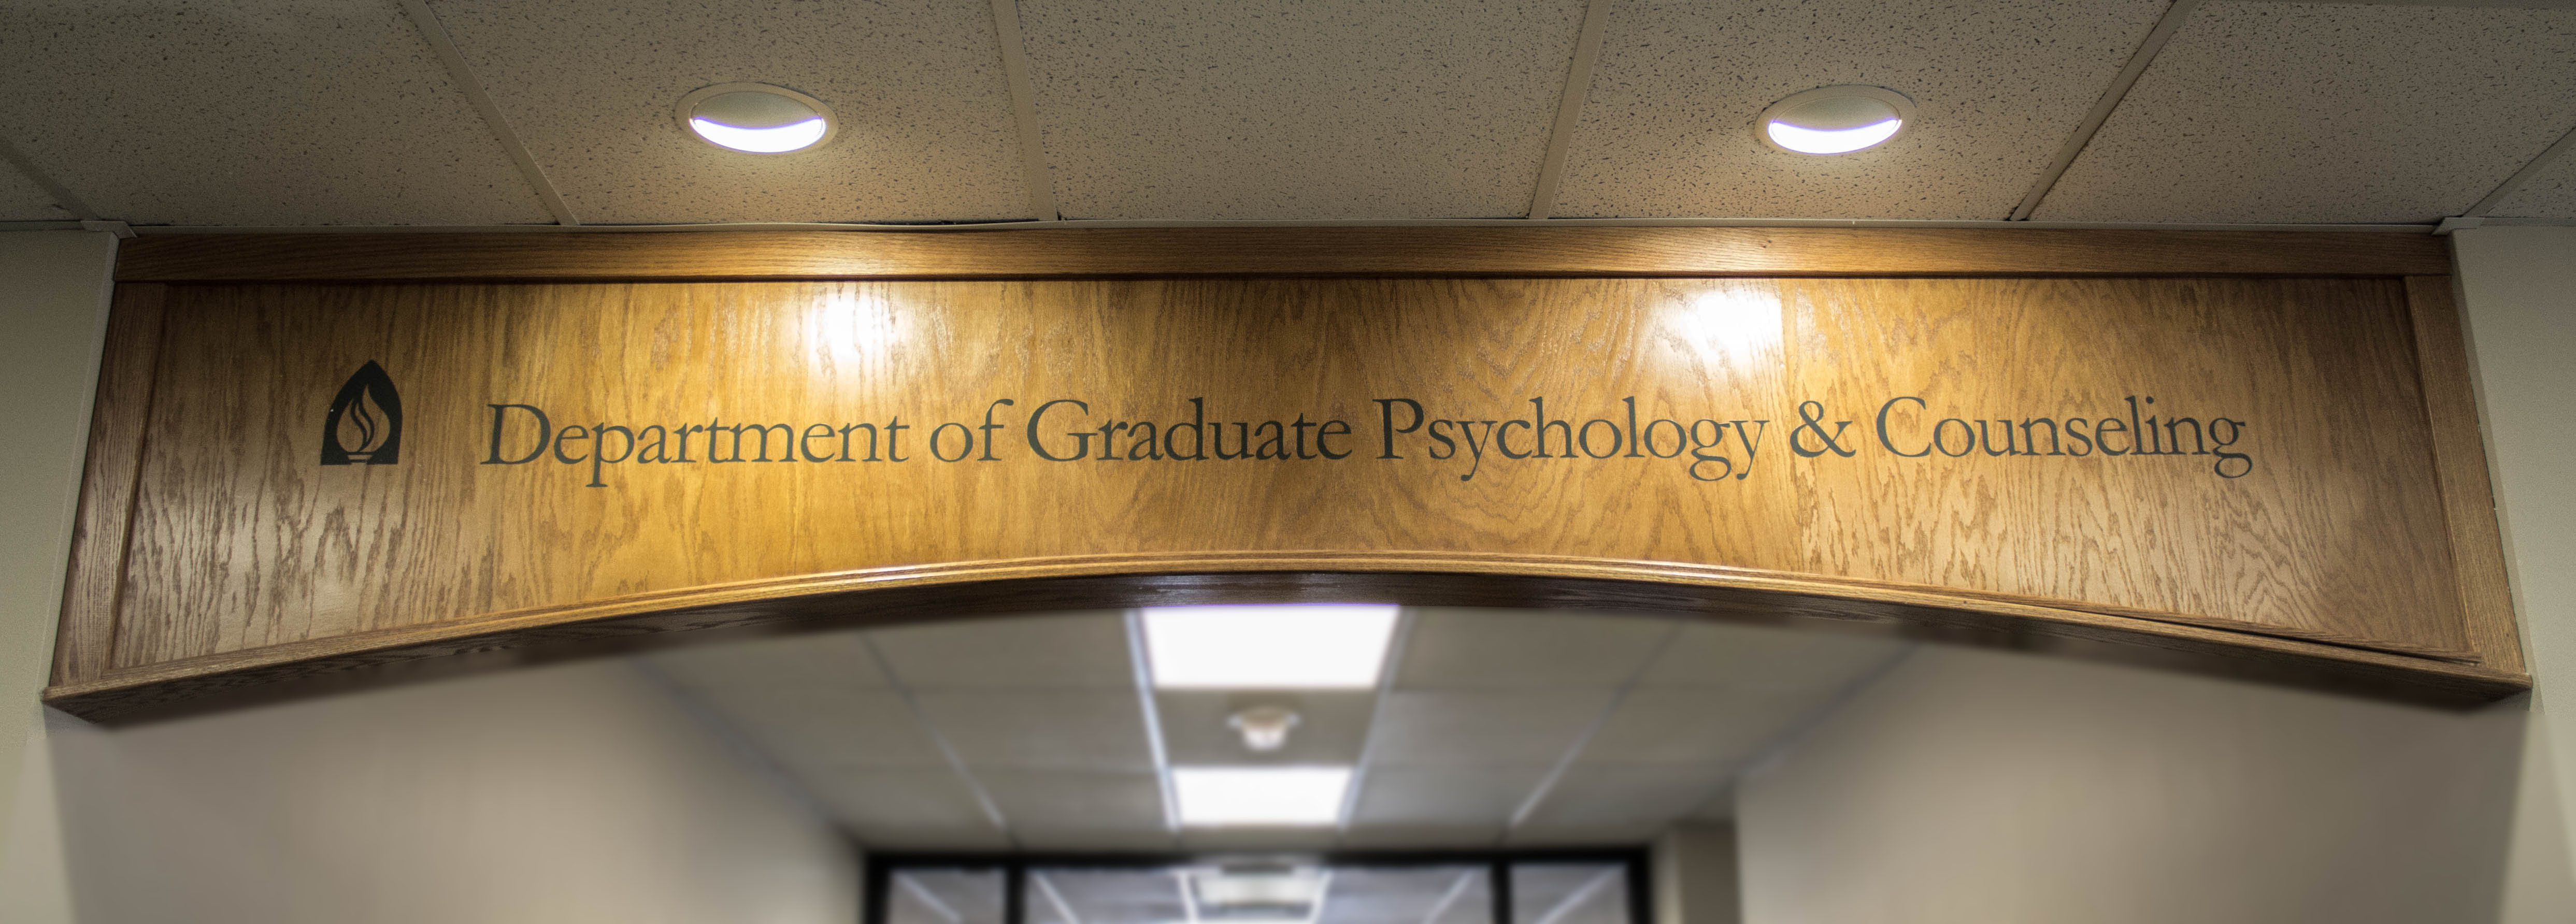 Graduate Psychology & Counseling